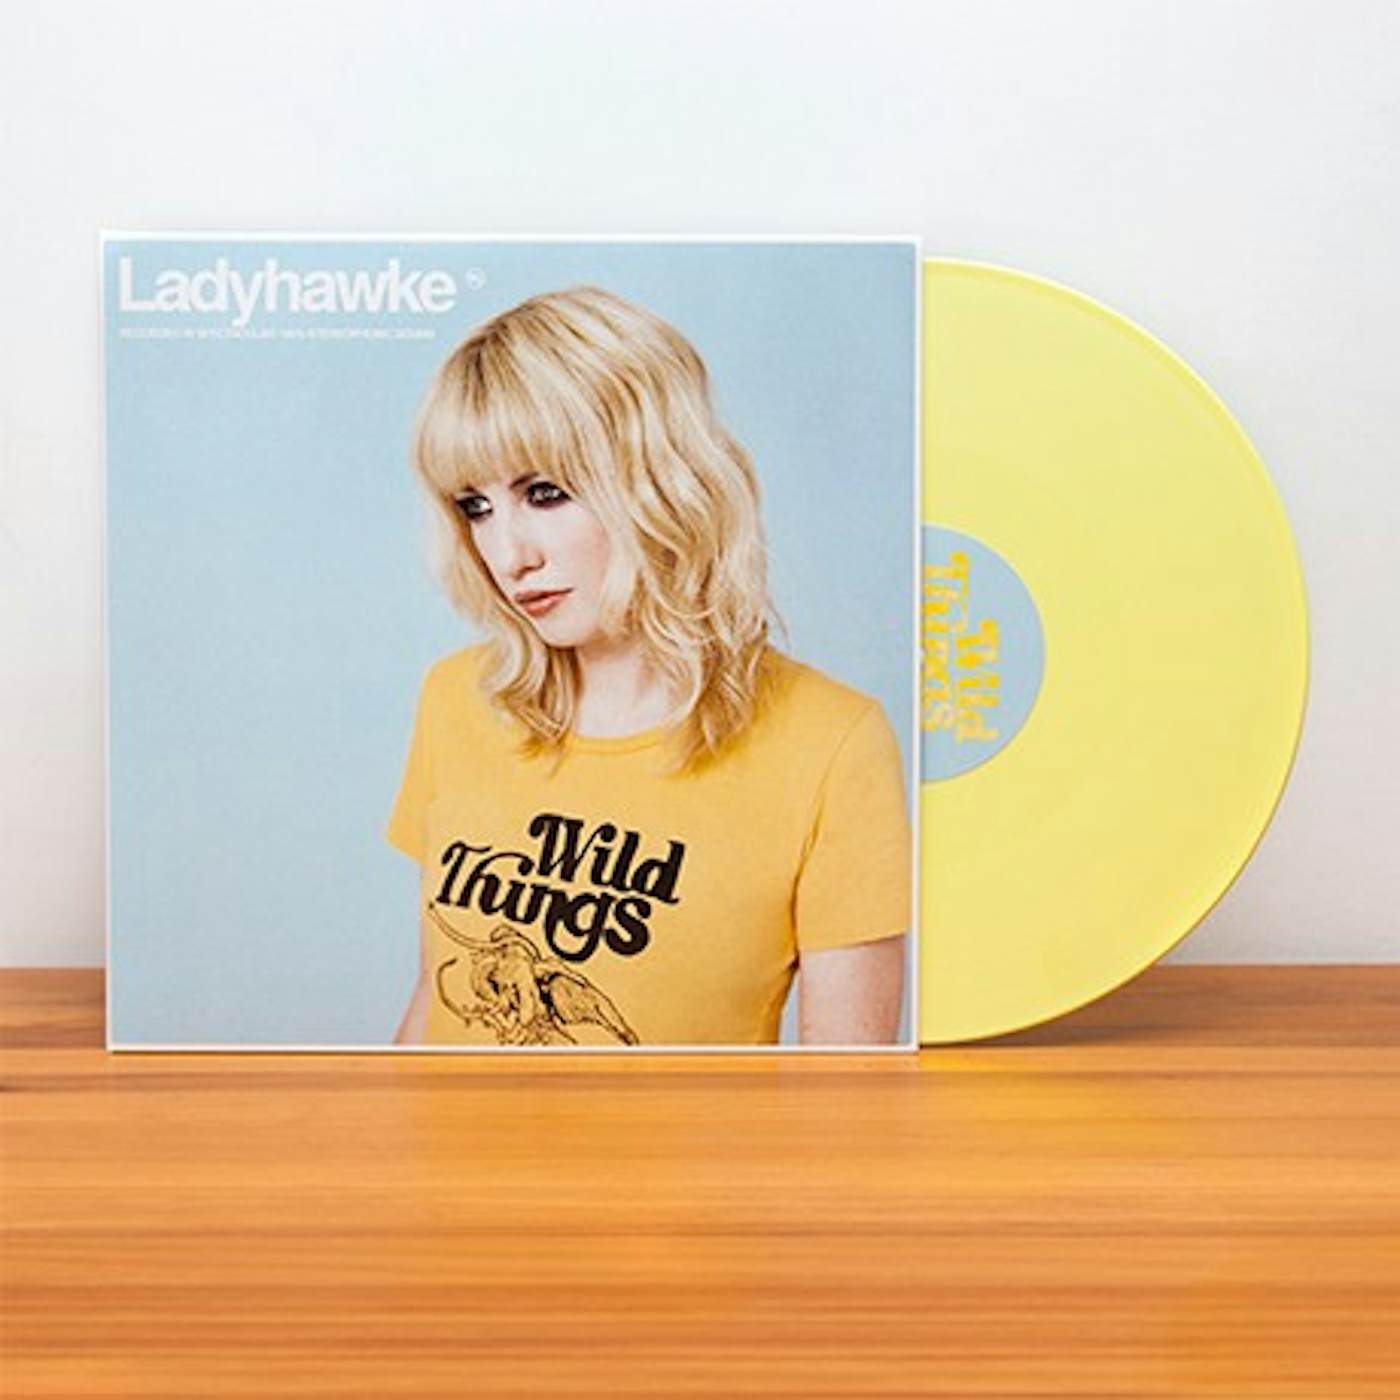 Ladyhawke Wild Things (Vinyl)